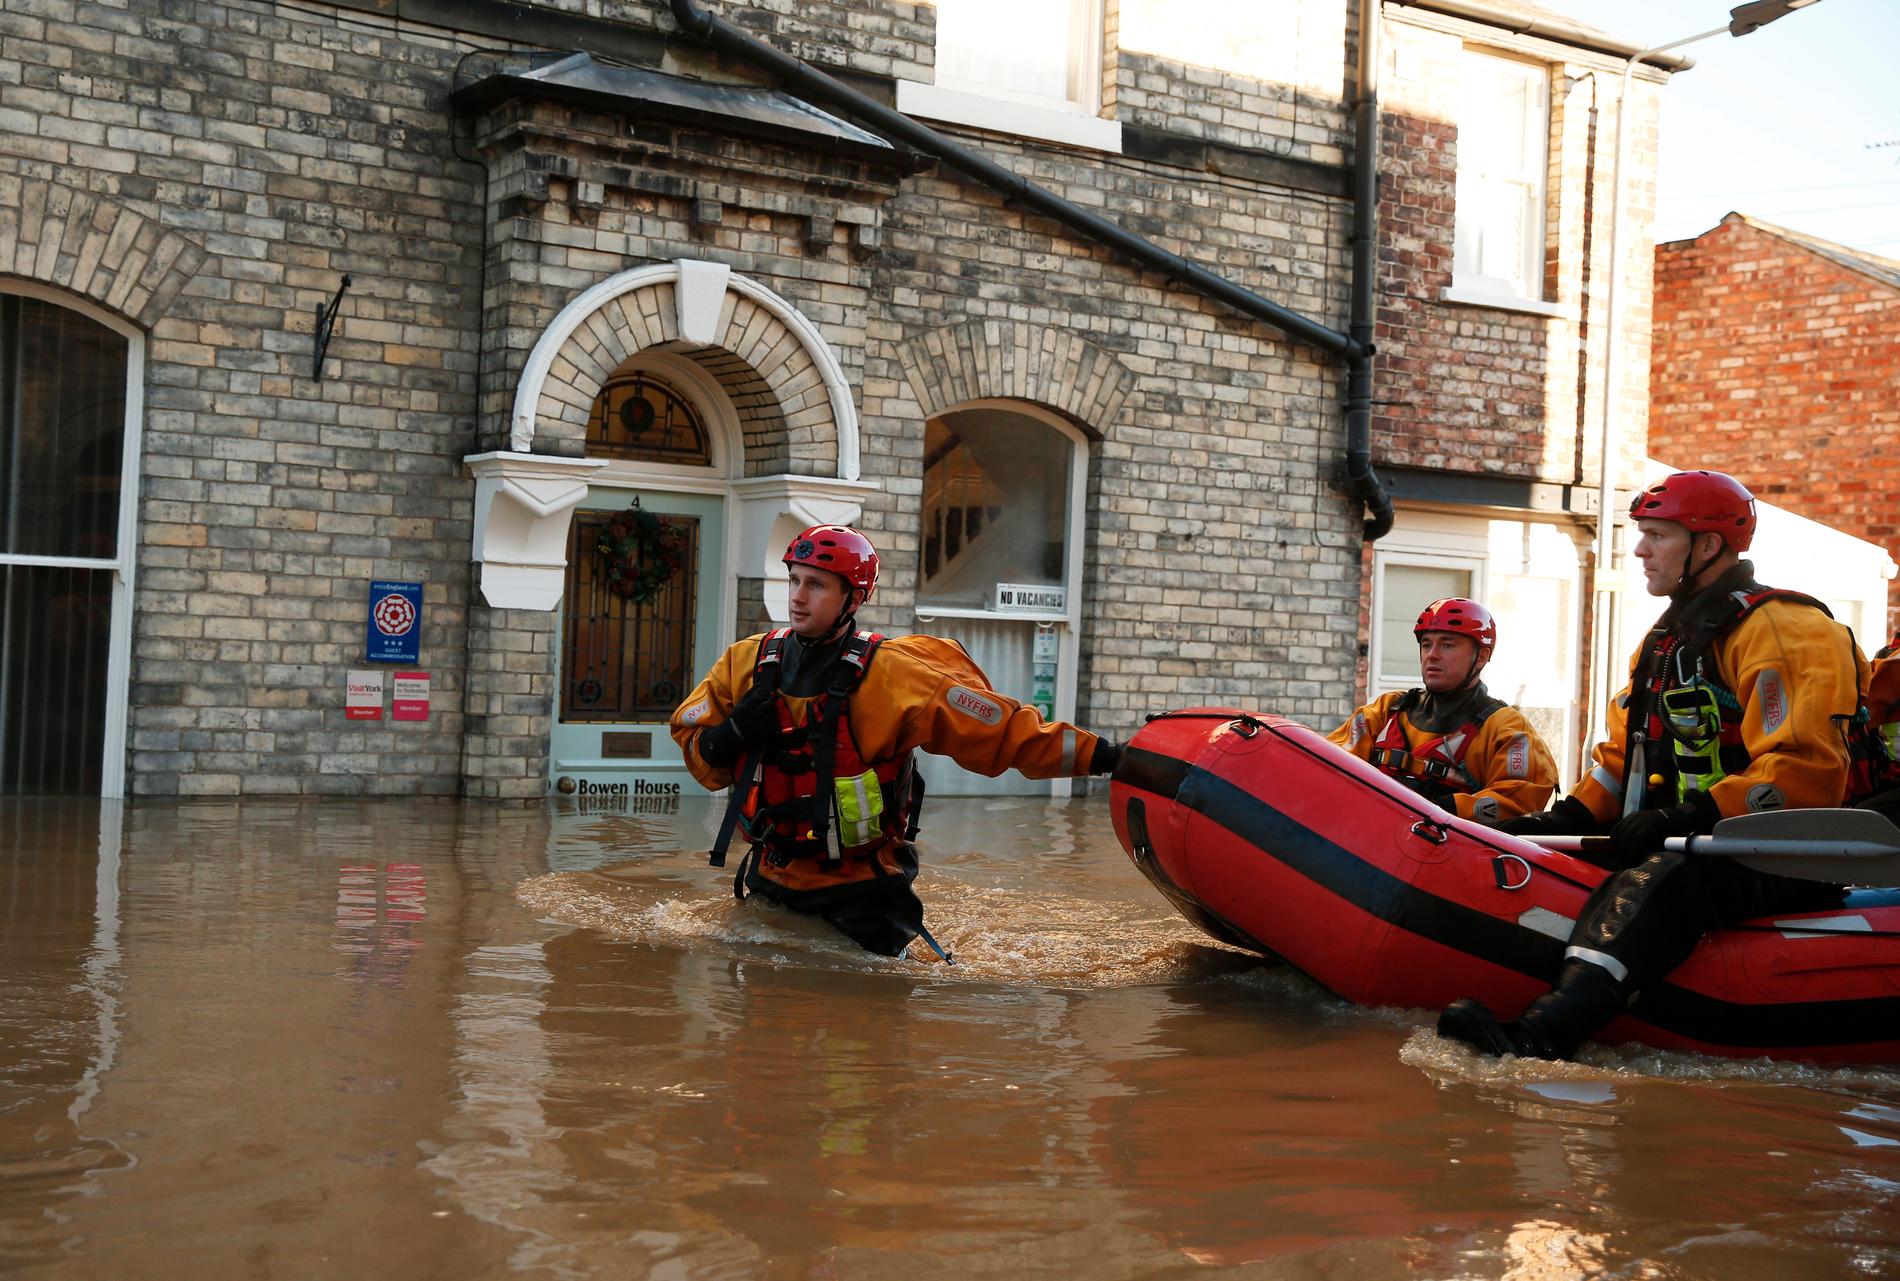 I York i norra England är gatorna helt översvämmade av meterhögt vatten.